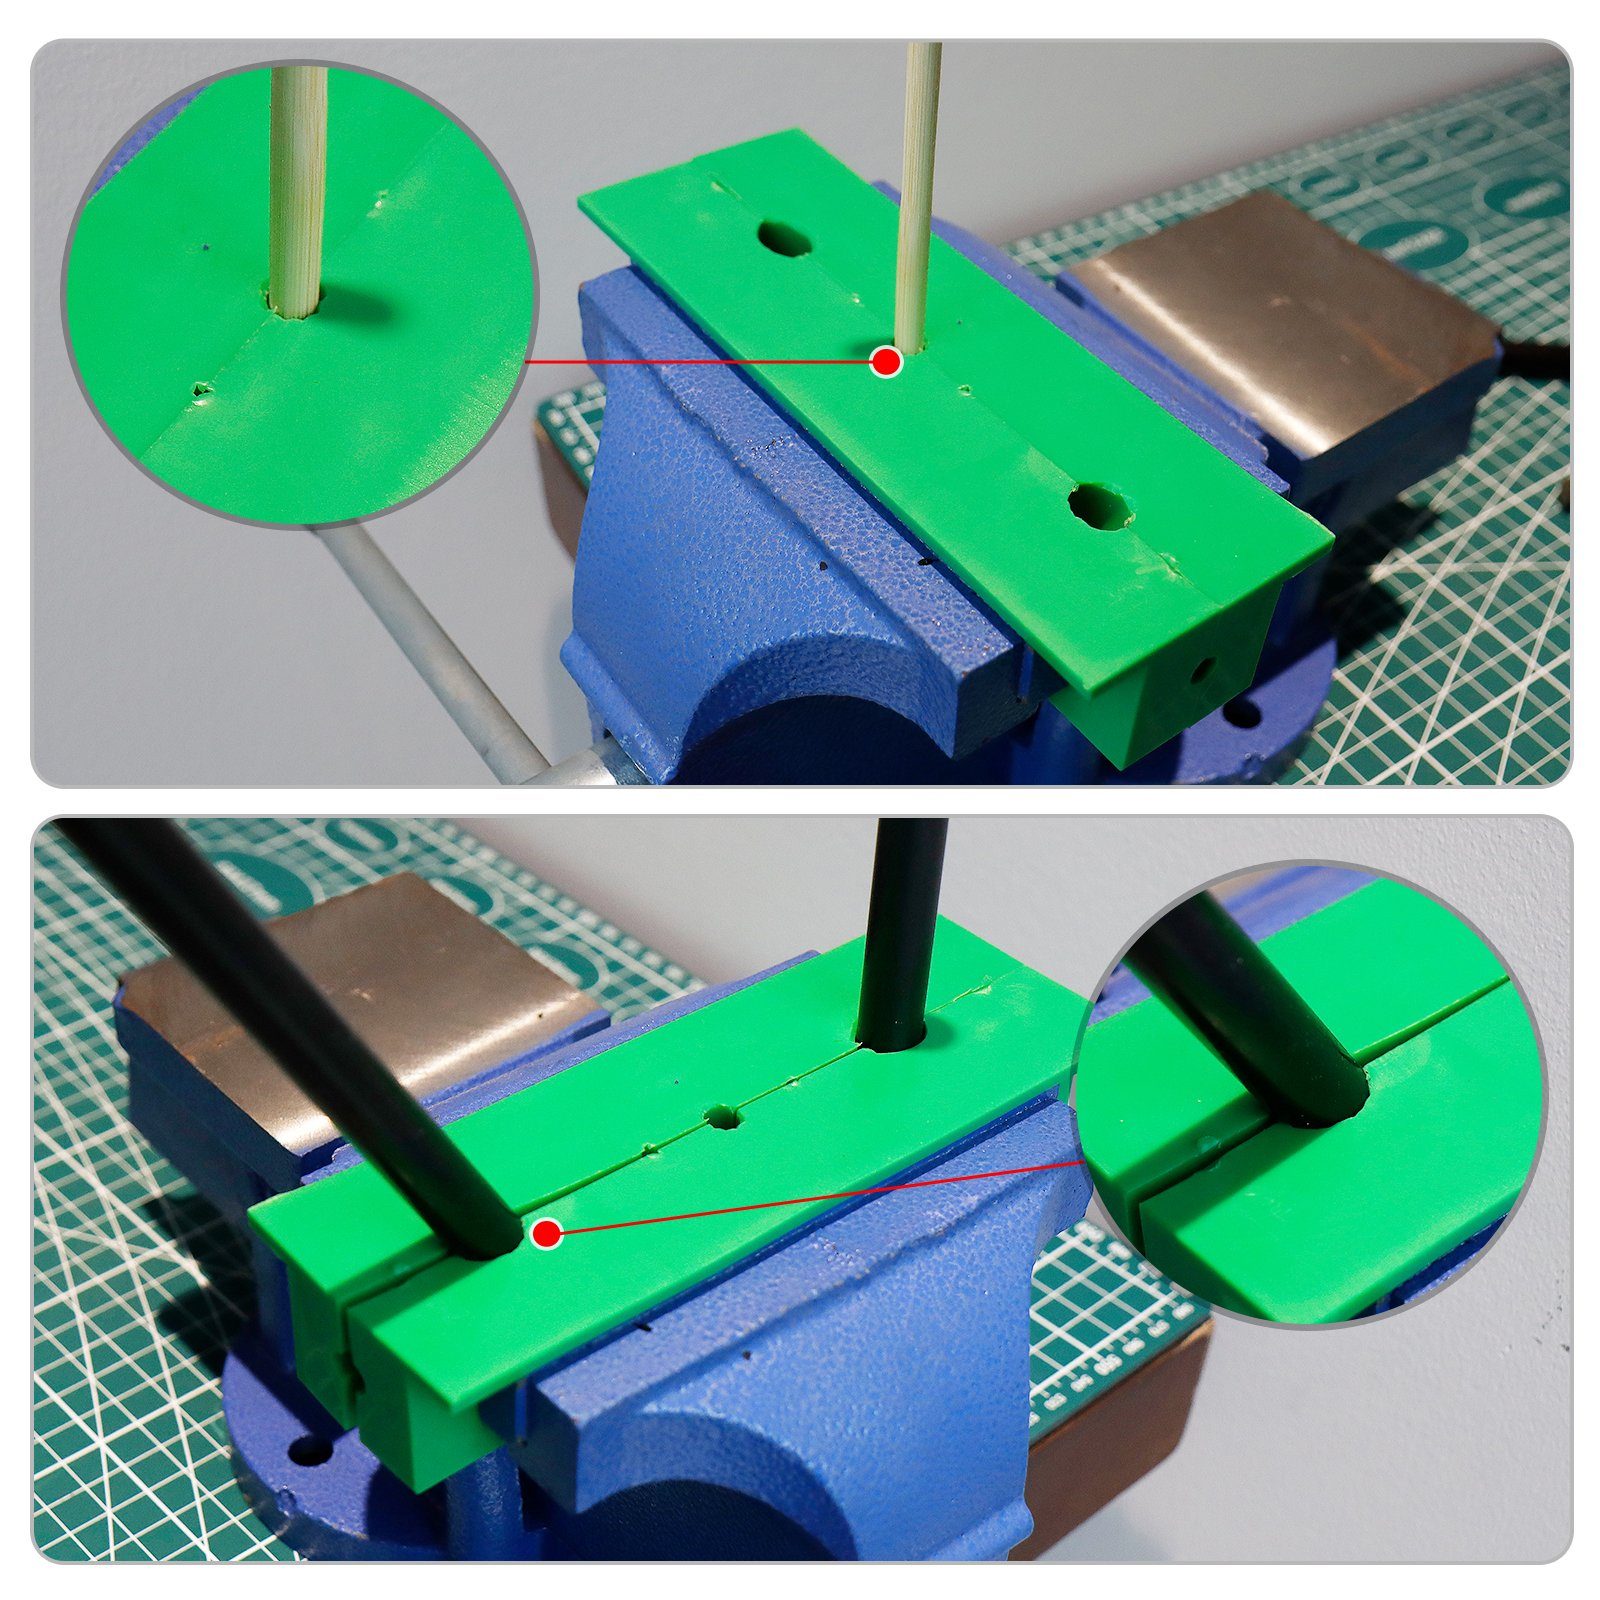 CCLIFE Schraubstock 2 Magnet mit 150mm grün tlg / 110mm Schraubstock-Schutzbacken Breite 150mm